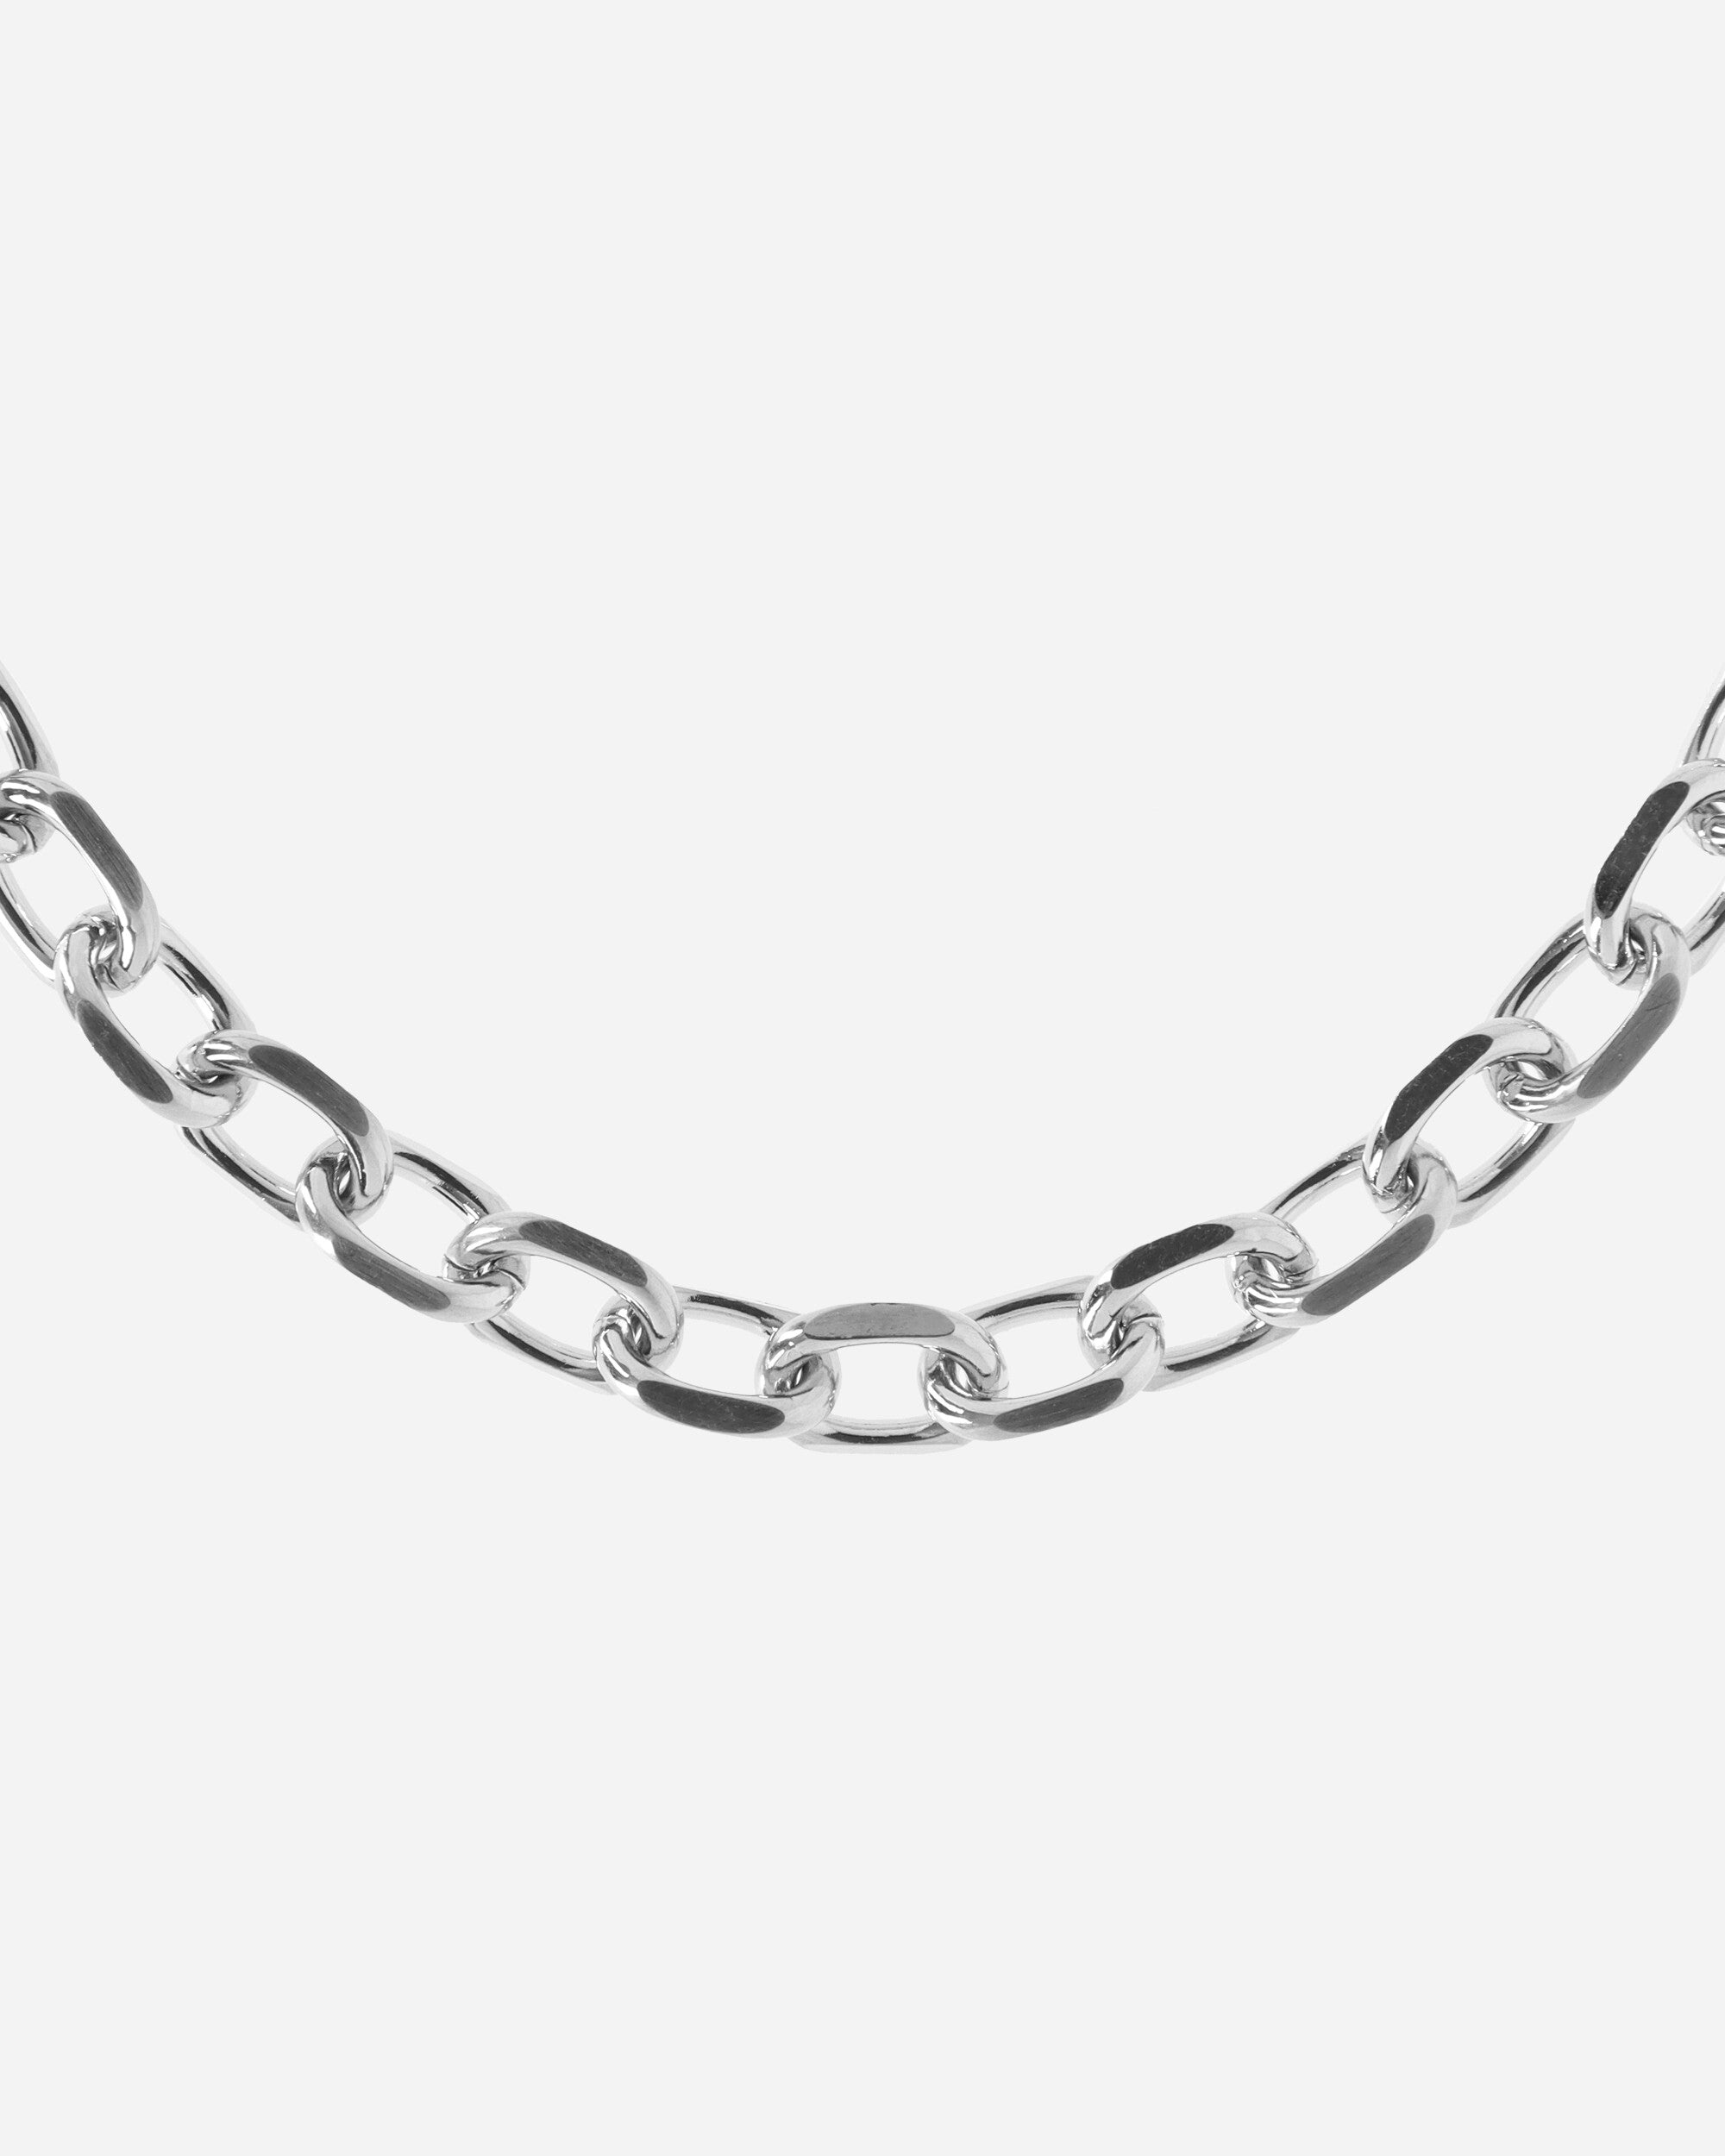 Ladon Chain Matte Nickel - 5